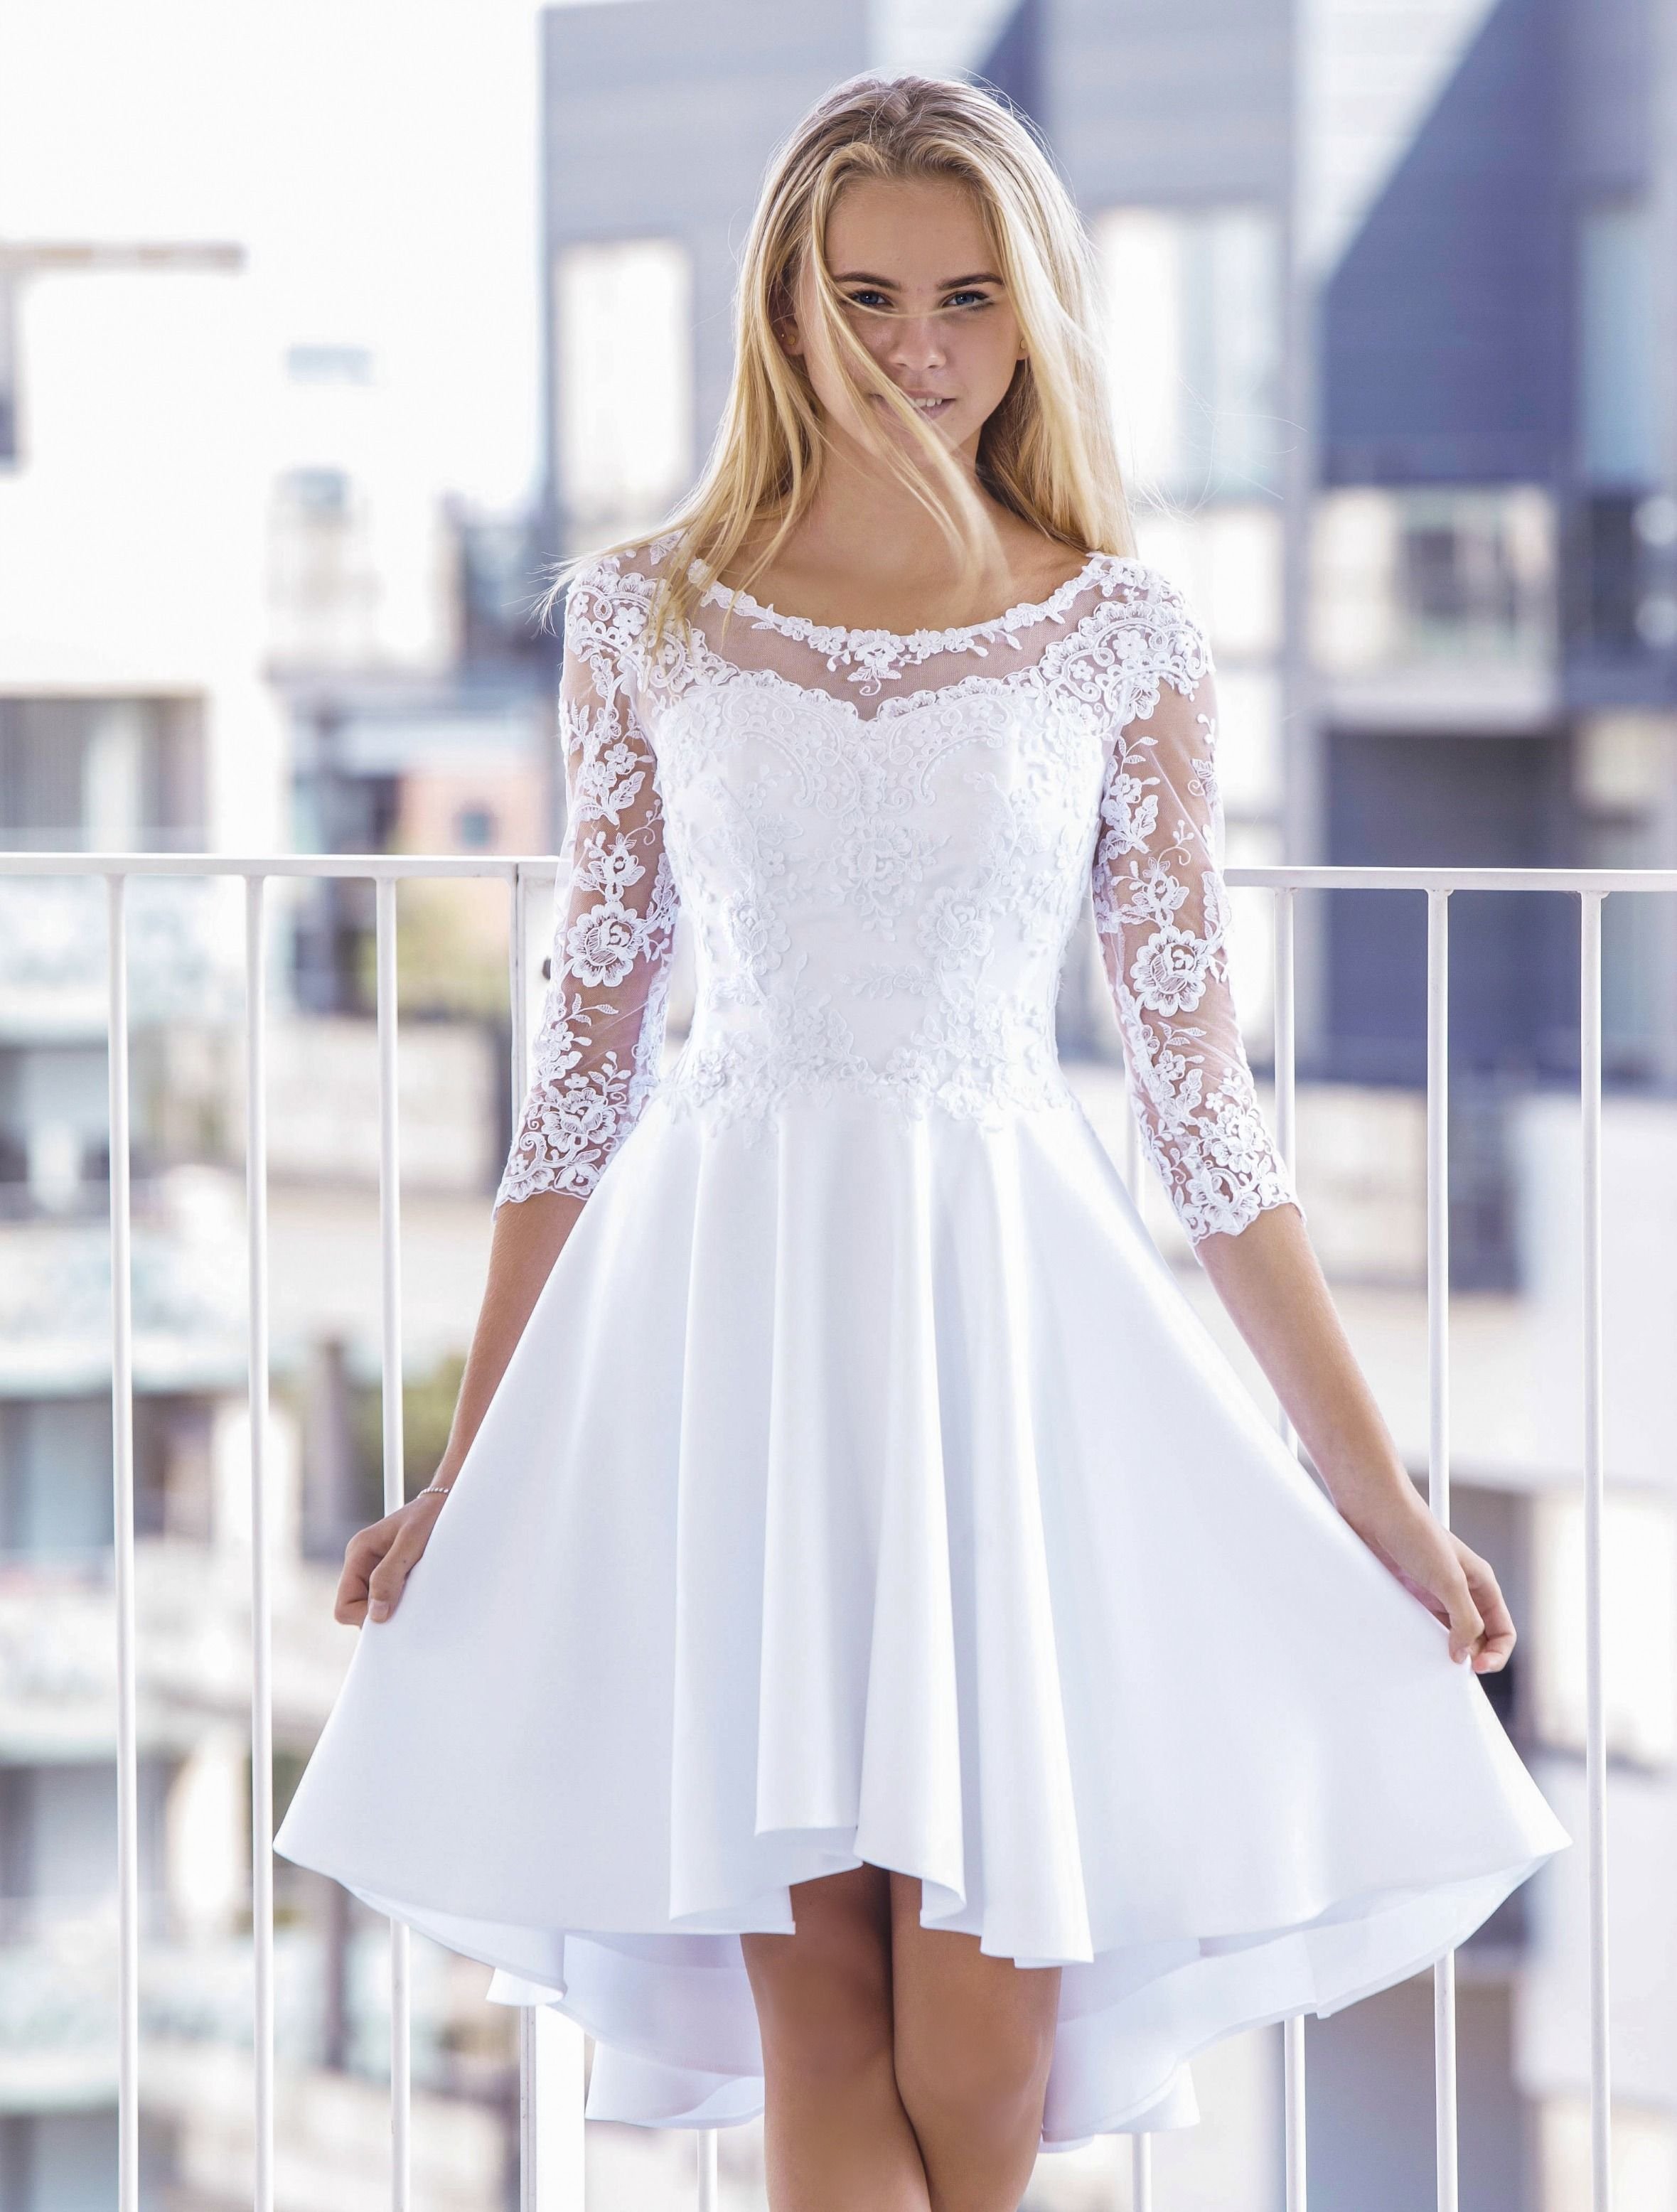 Недорогие белые платья. Белое платье. Красивое белое платье. Короткое свадебное платье. Белое короткое платье.